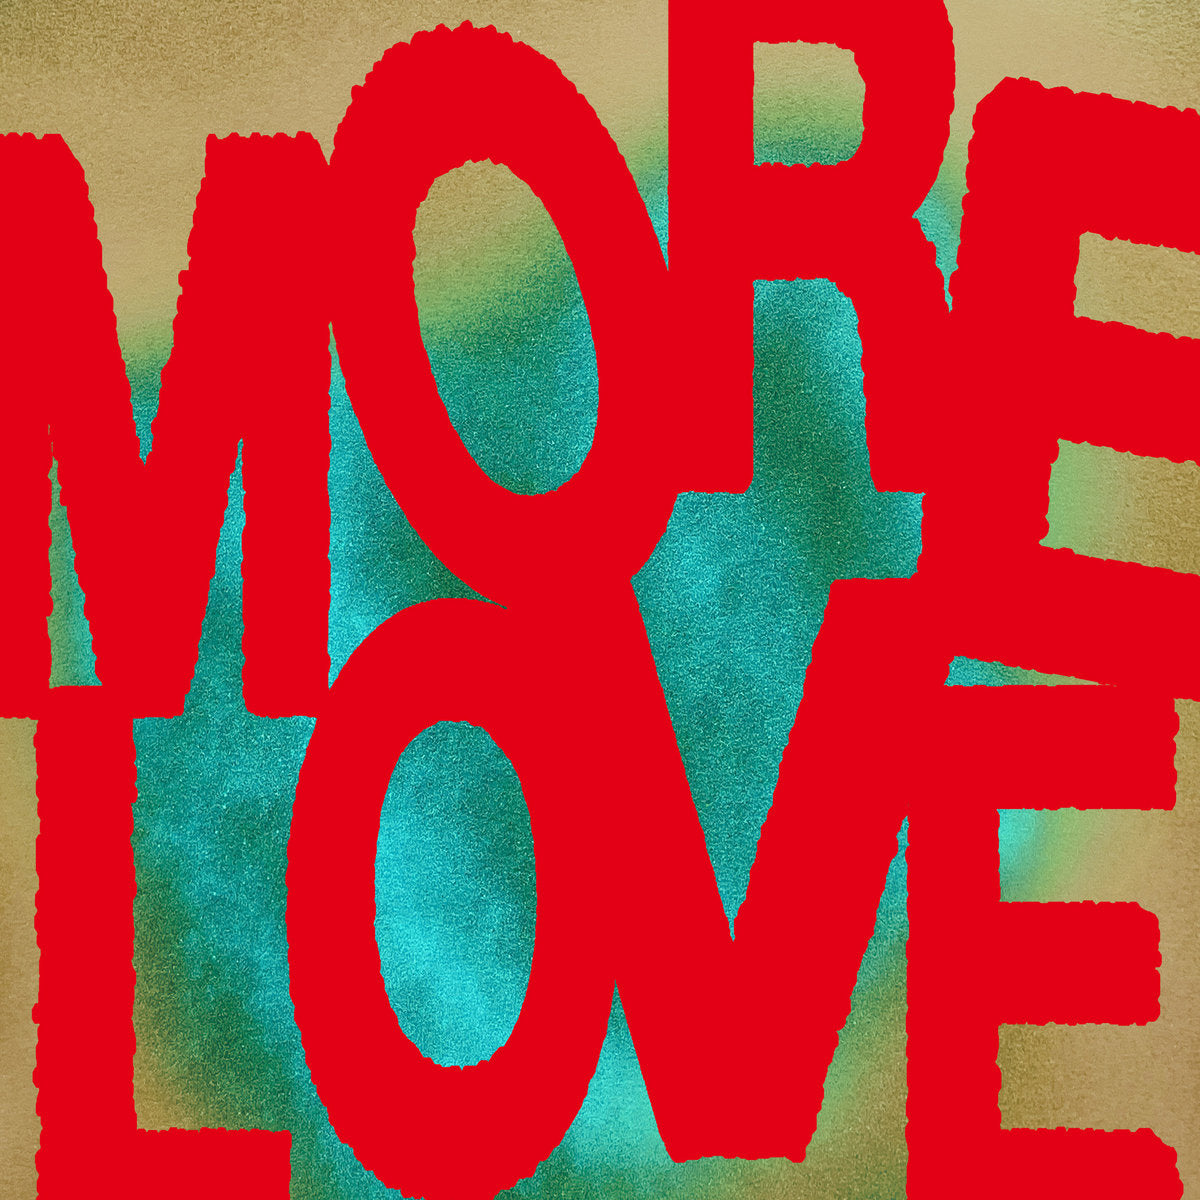 Moderat - More Love (Rampa &ME Remix) [Keinemusik]